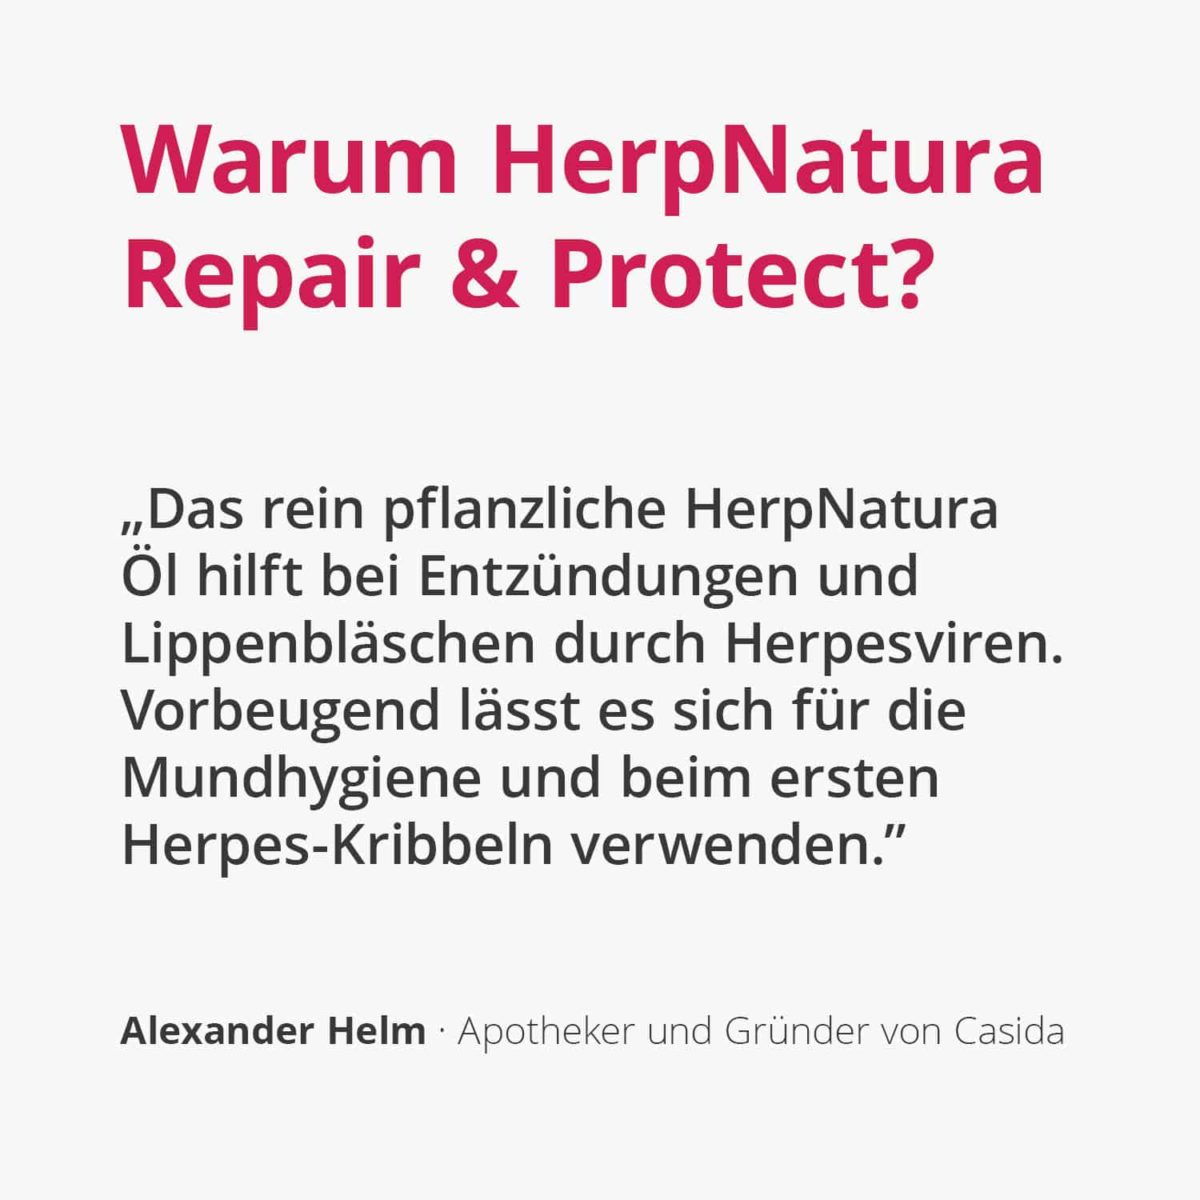 HerpNatura Repair & Protect